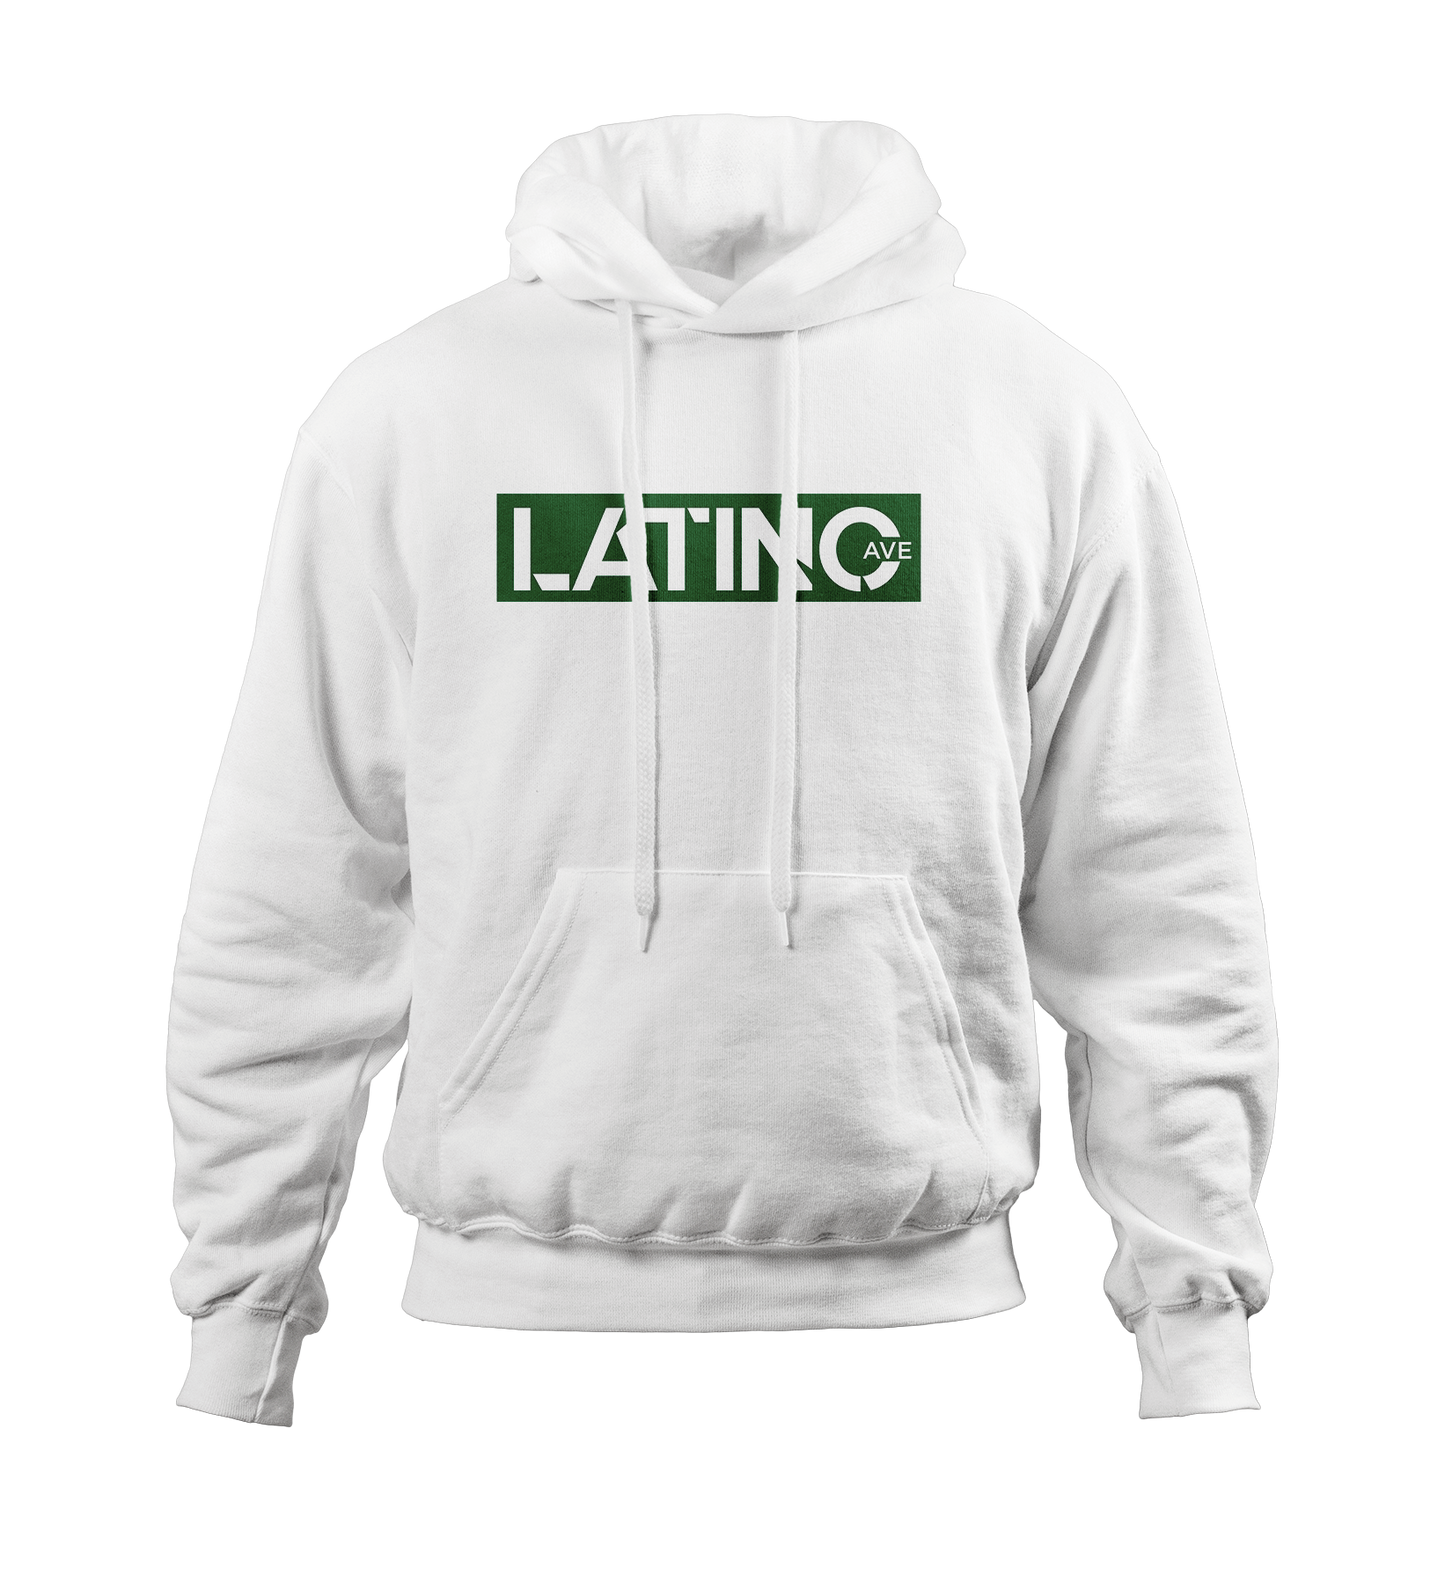 Latino Ave Hoodie